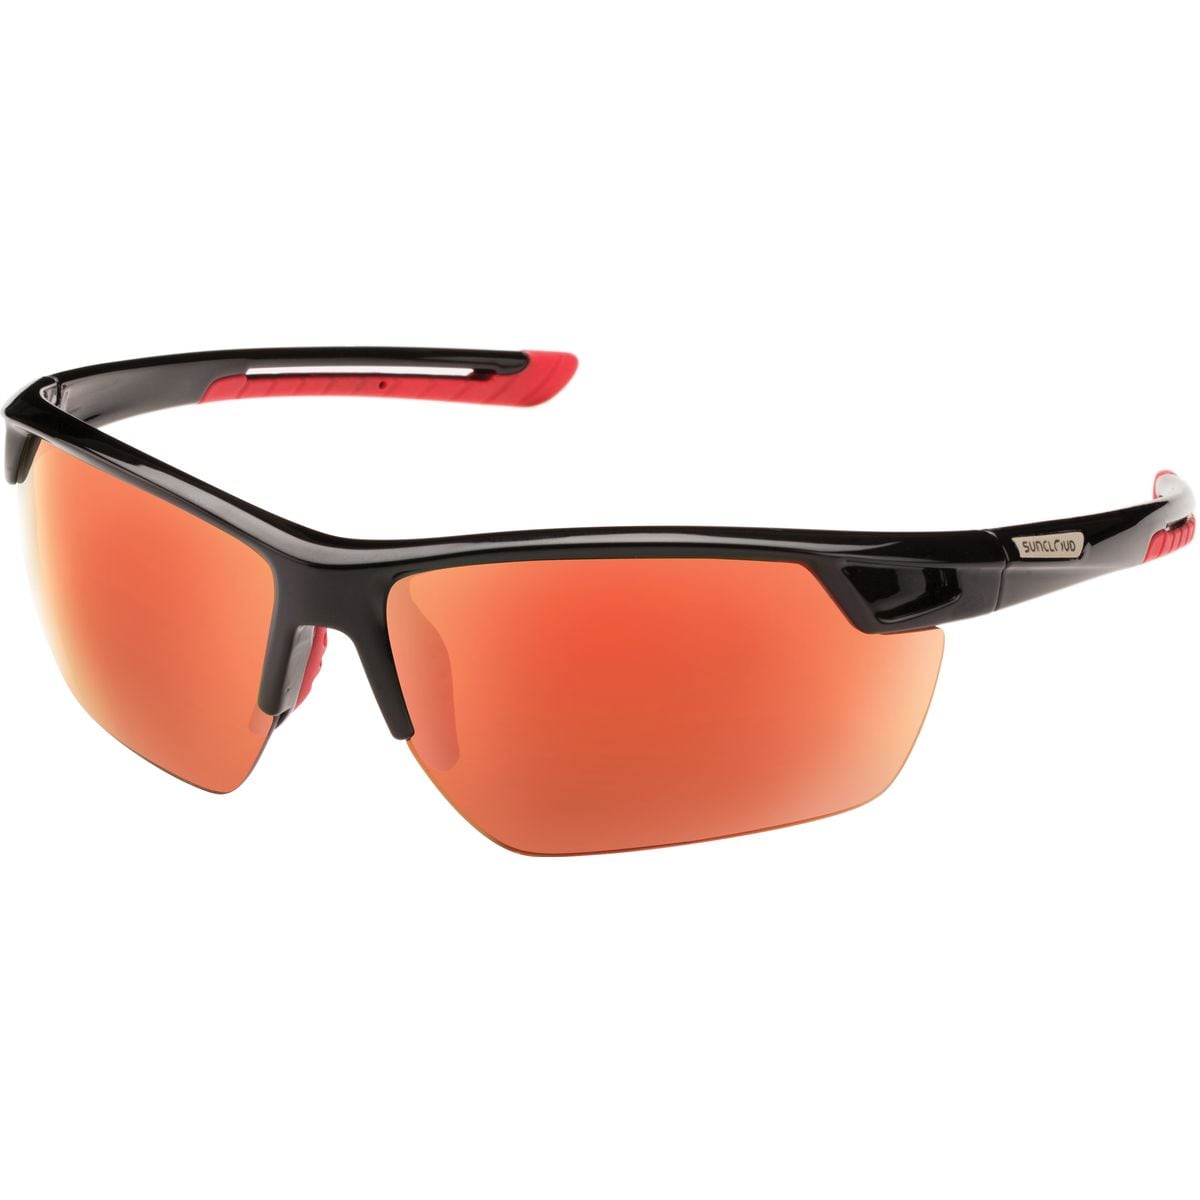 Поляризованные солнцезащитные очки contender Suncloud Polarized Optics, цвет black/red mirror очки солнцезащитные stylemark polarized l2480d